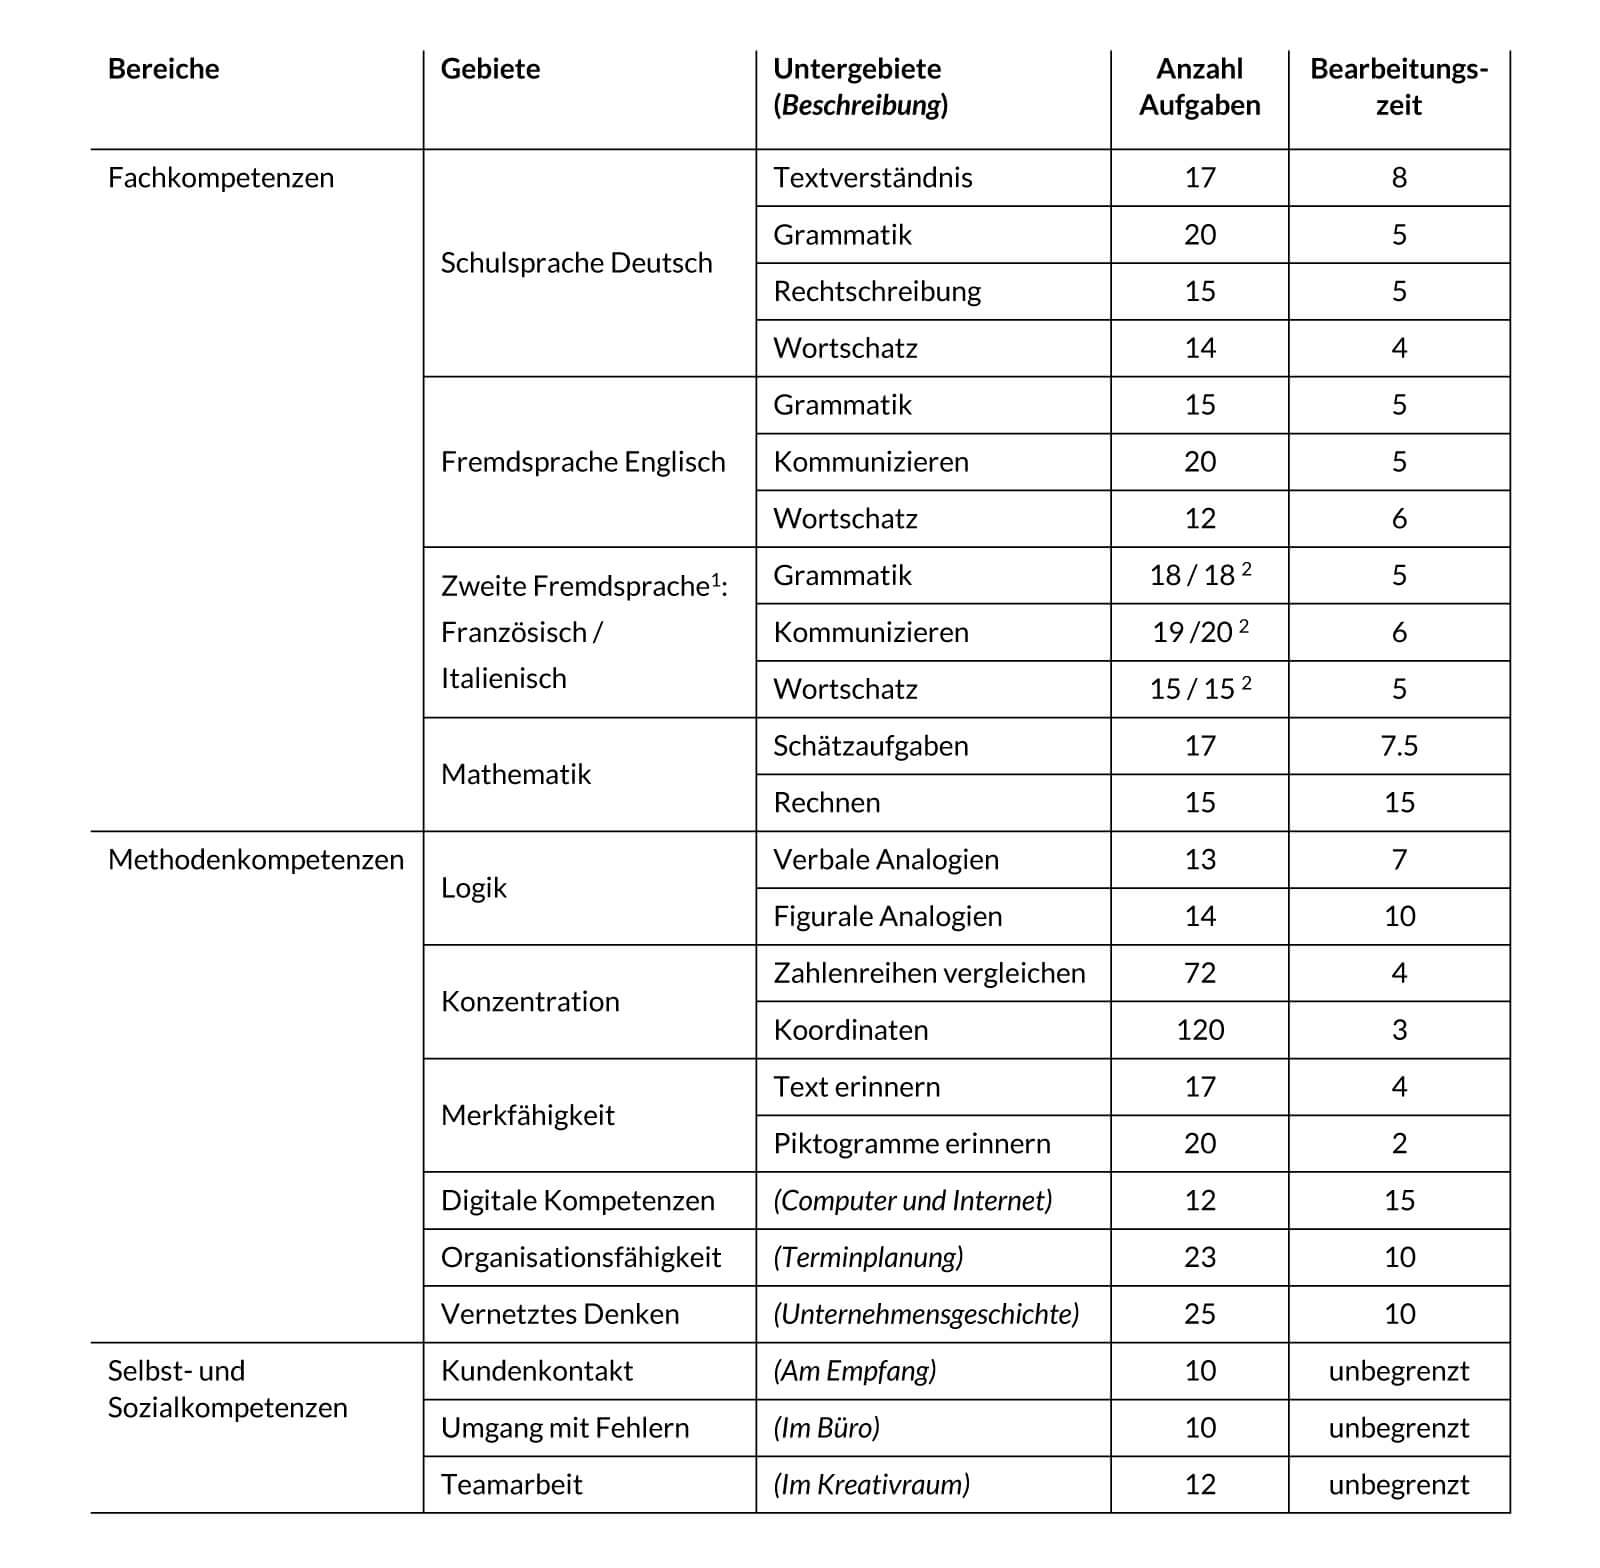 Tabelle B1. Bereiche, Gebiete und Untergebiete des Multicheck® Wirtschaft und Administration